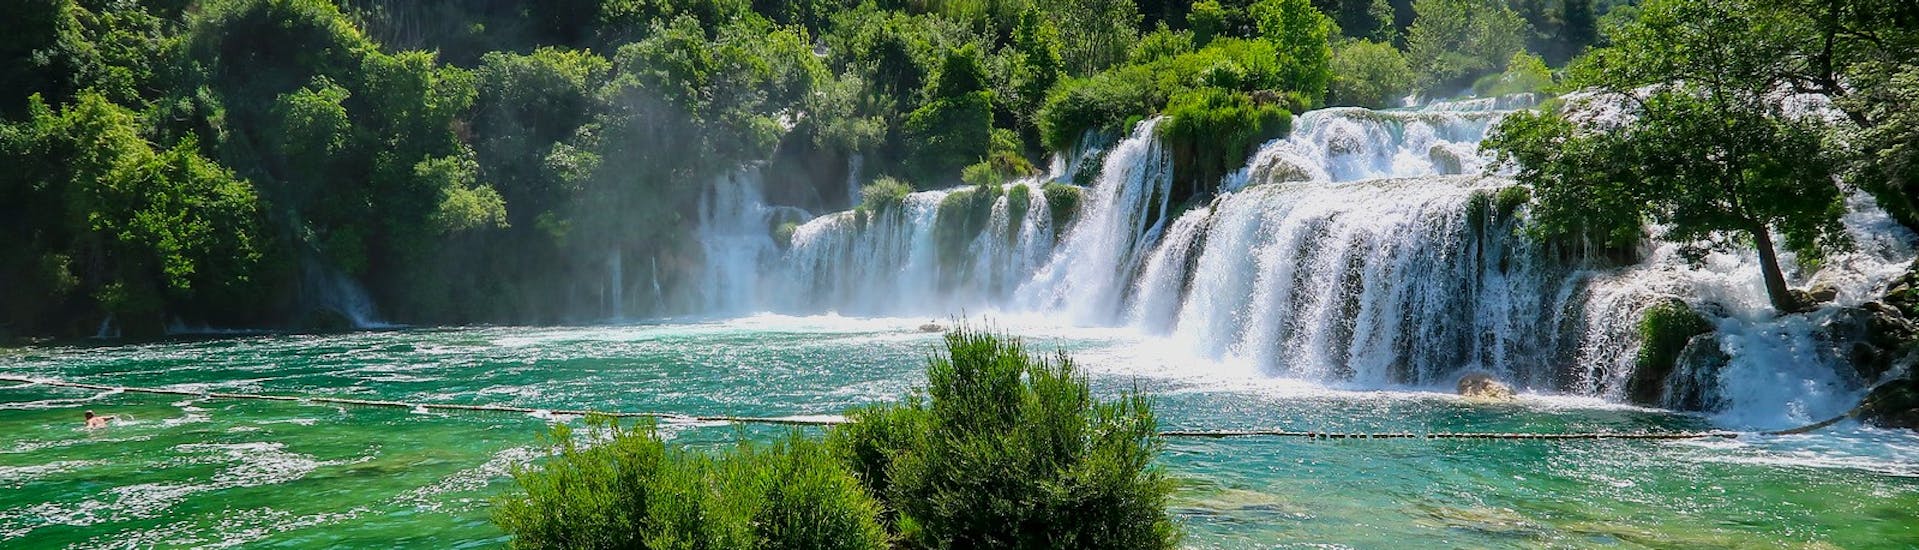 La nature intacte qui se découvre durant l'Excursion en bus & bateau au parc national de Krka depuis Zadar avec Jadera Booking Zadar.